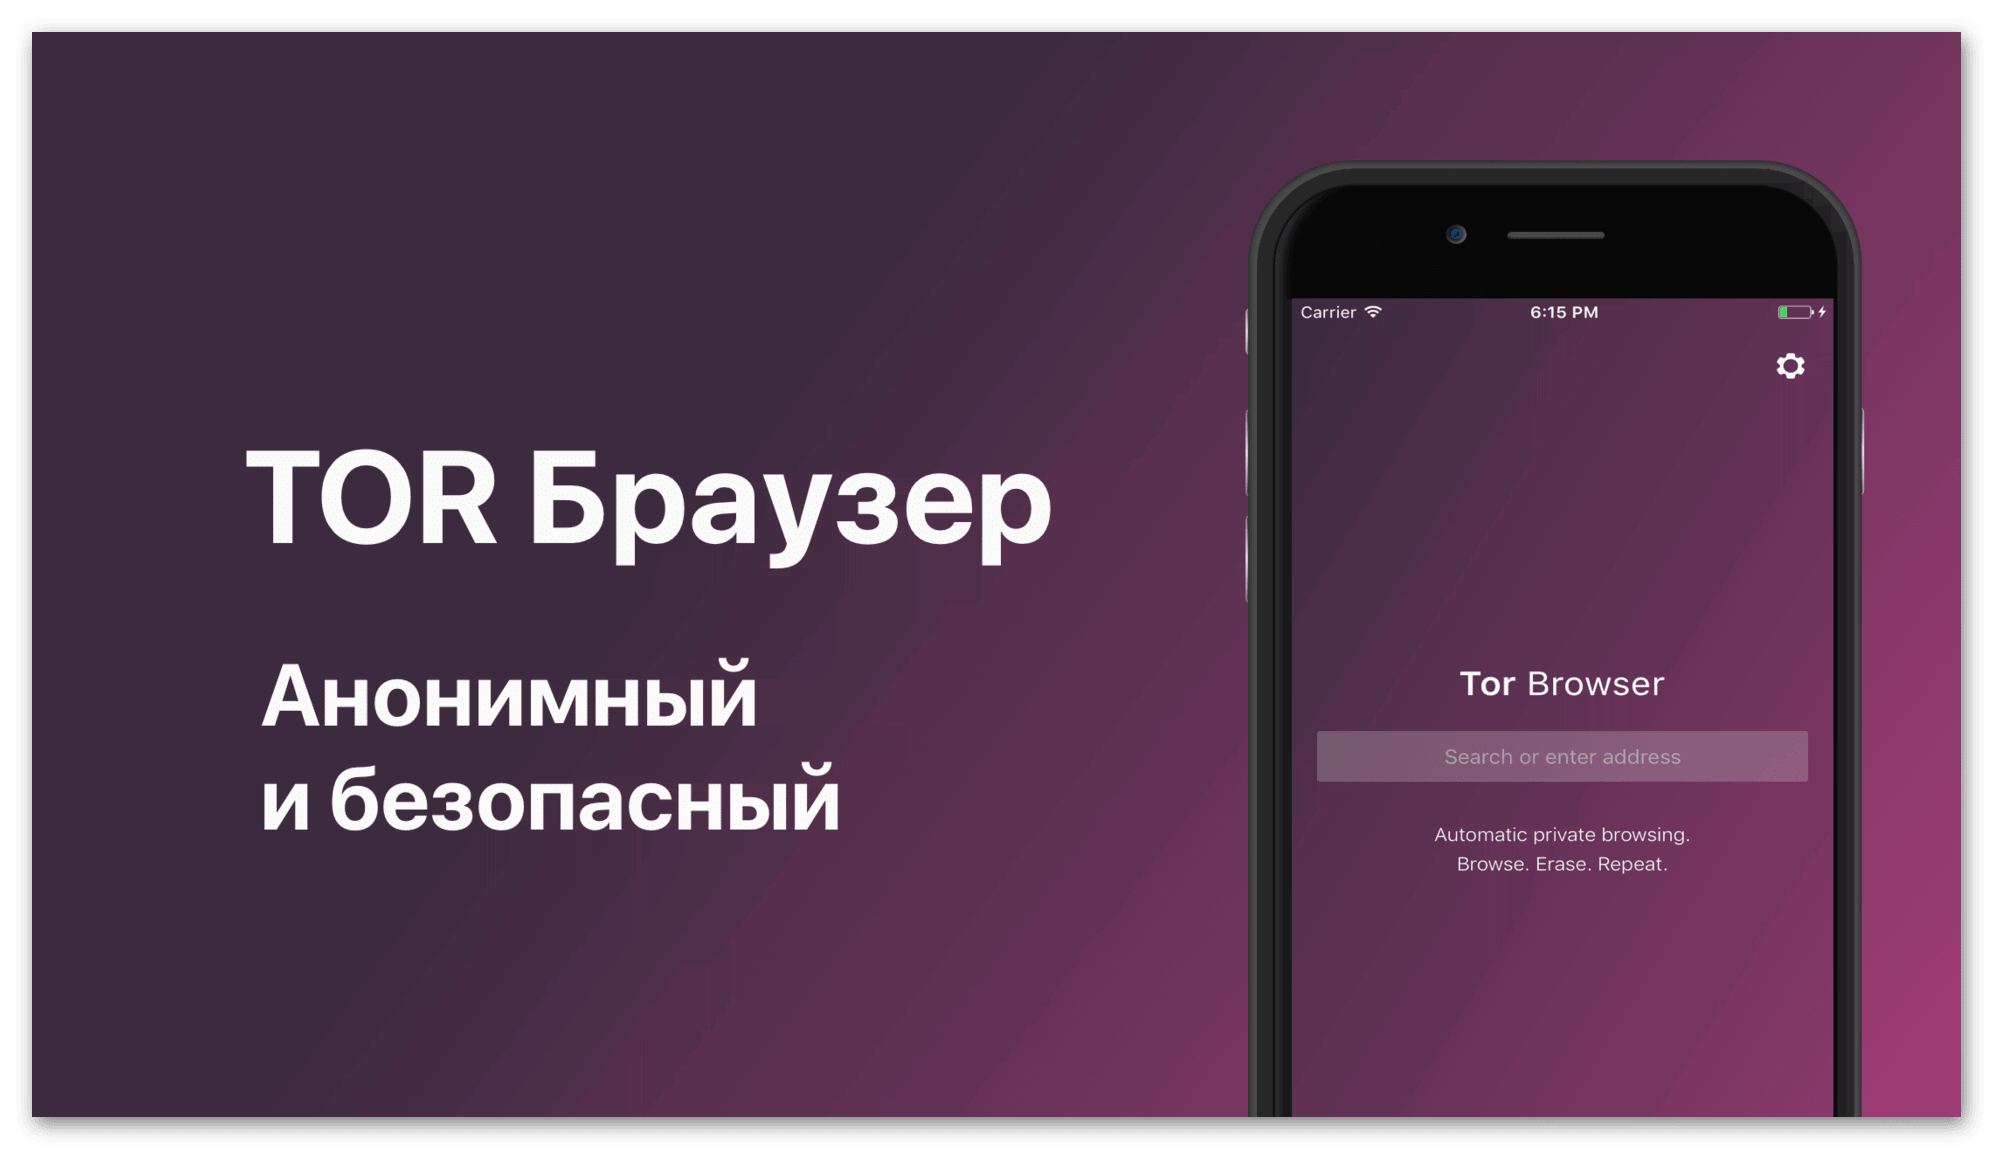 Браузер тор скачать на русском с официального сайта на айфон mega почему не воспроизводит видео в тор браузере mega